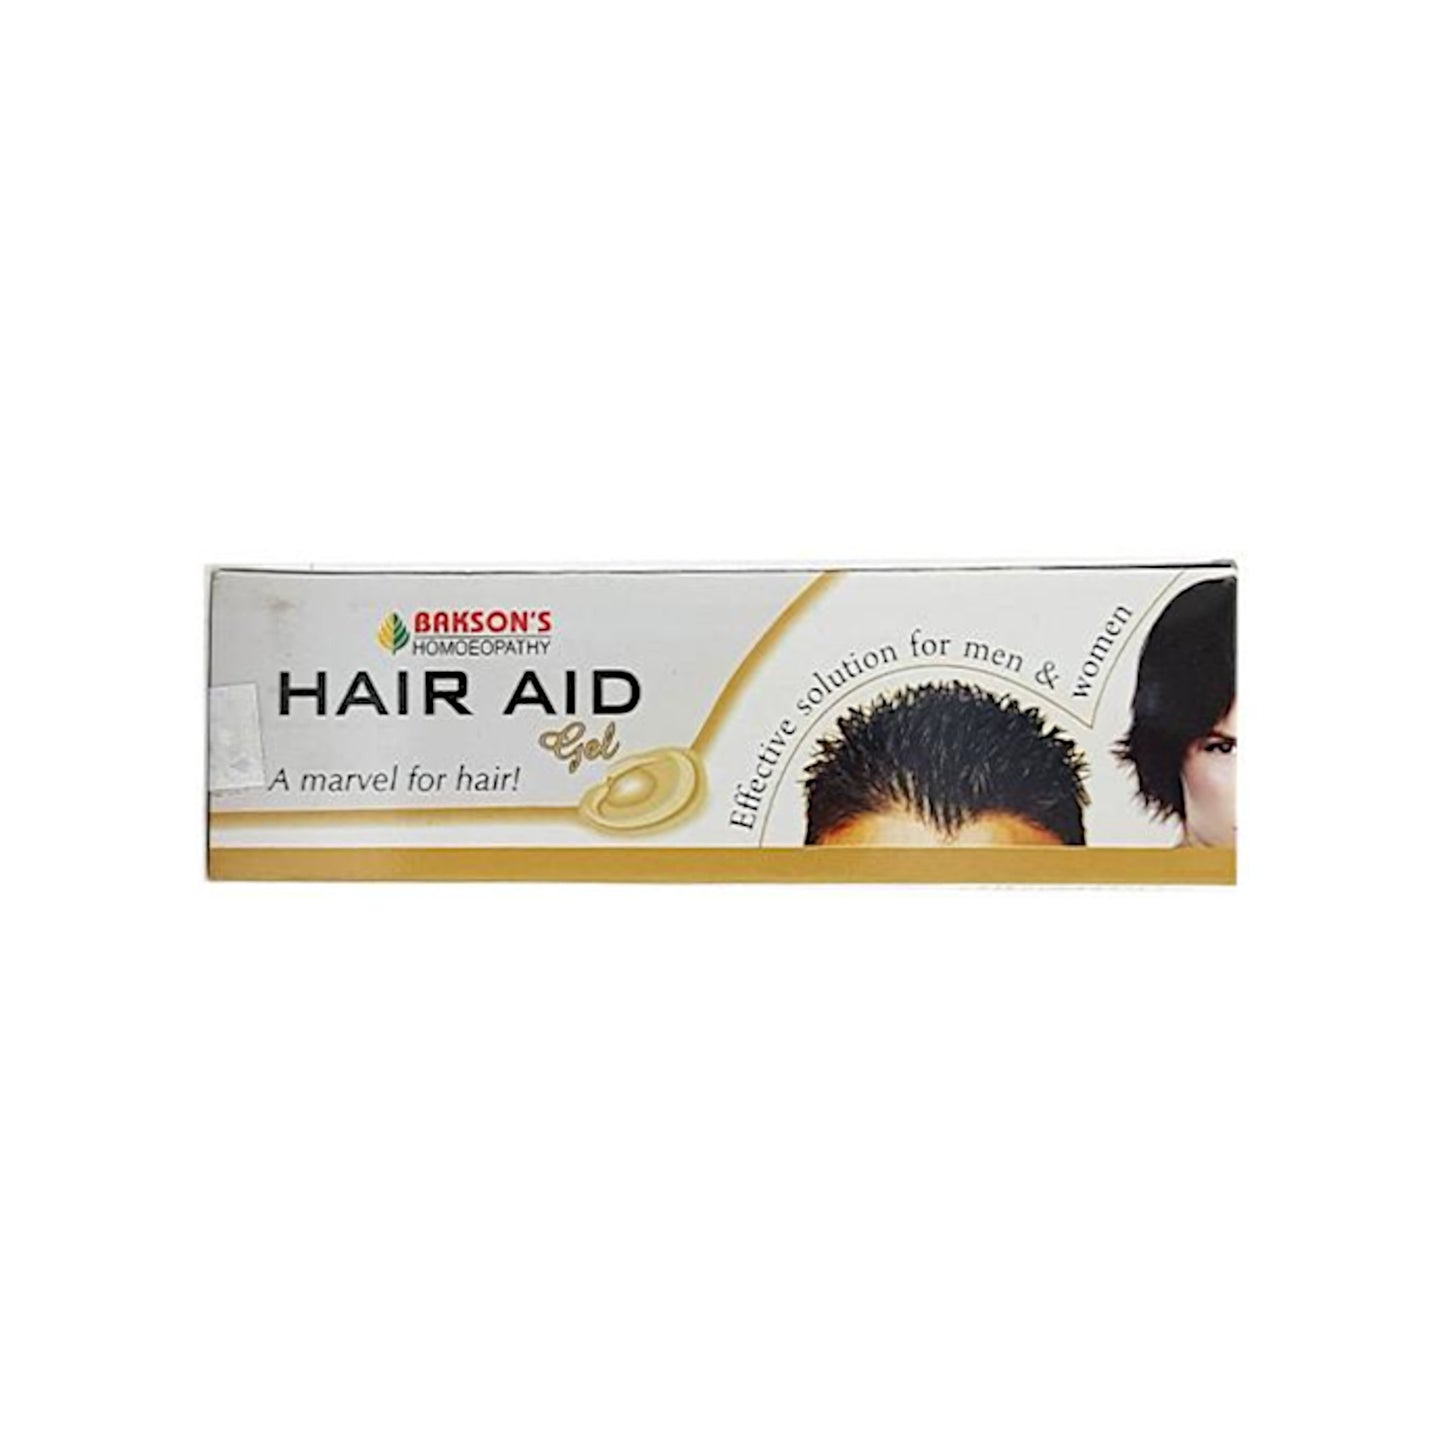 Bakson's Homeopathy - Hair Aid Gel 75 g